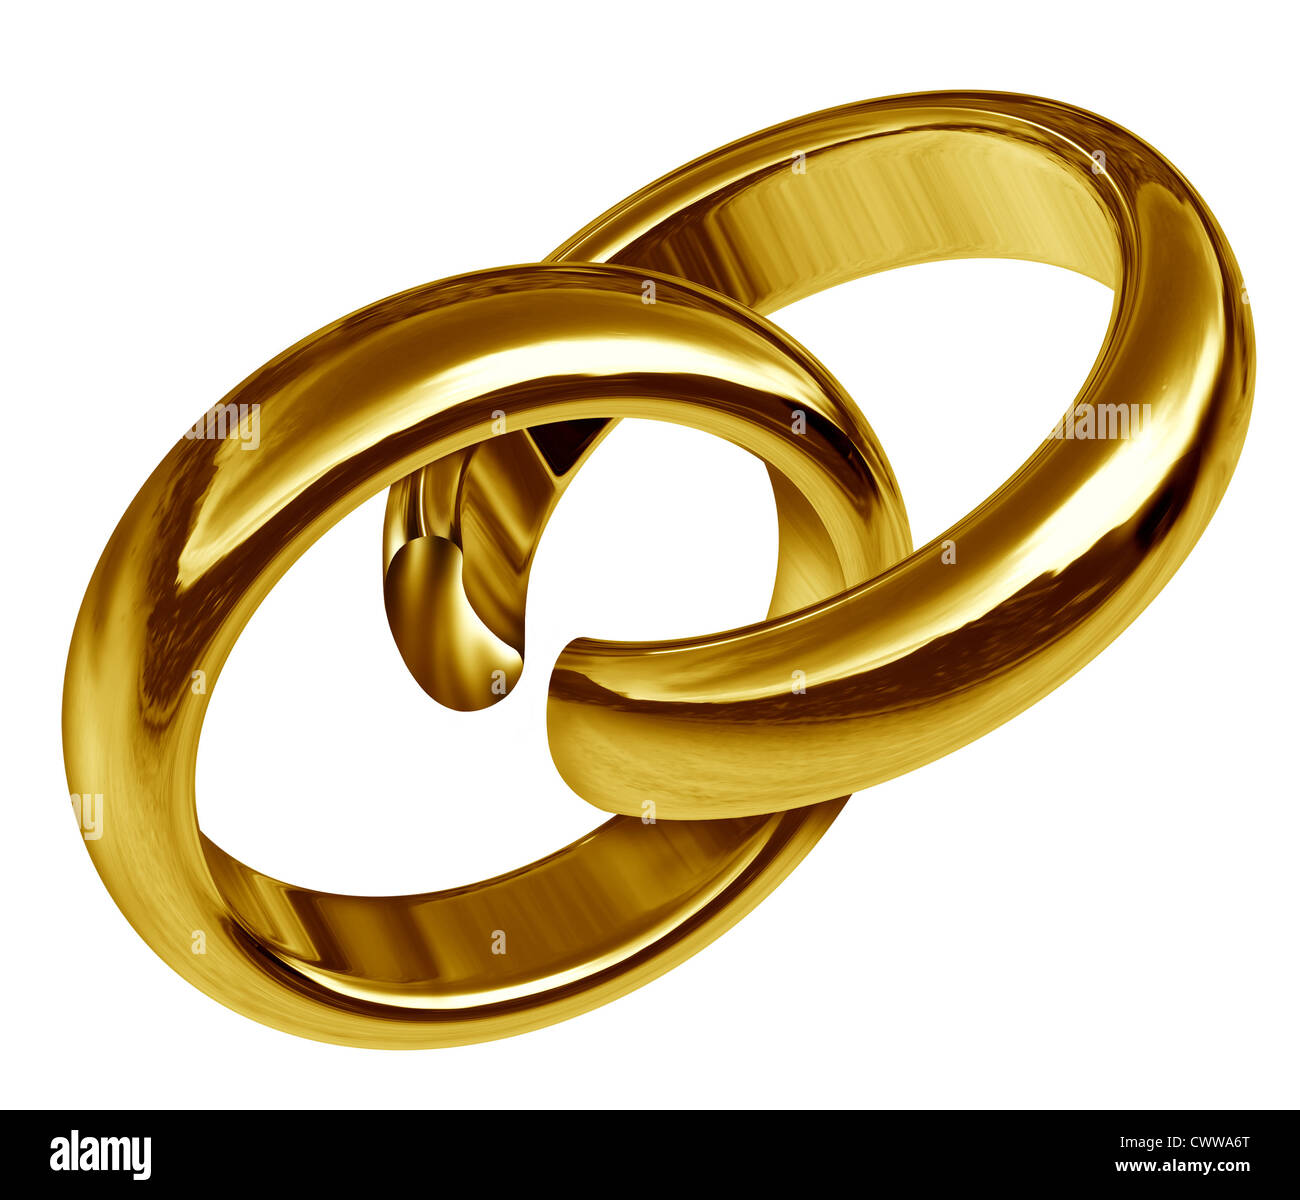 Scheidung und Trennung Symbol vertreten durch zwei verknüpfte Goldringe, die eine Pause in der Union das traurige Ergebnis einer zerbrochenen Beziehung und Pause während der Ehe oder Verlobung angezeigt hat. Stockfoto